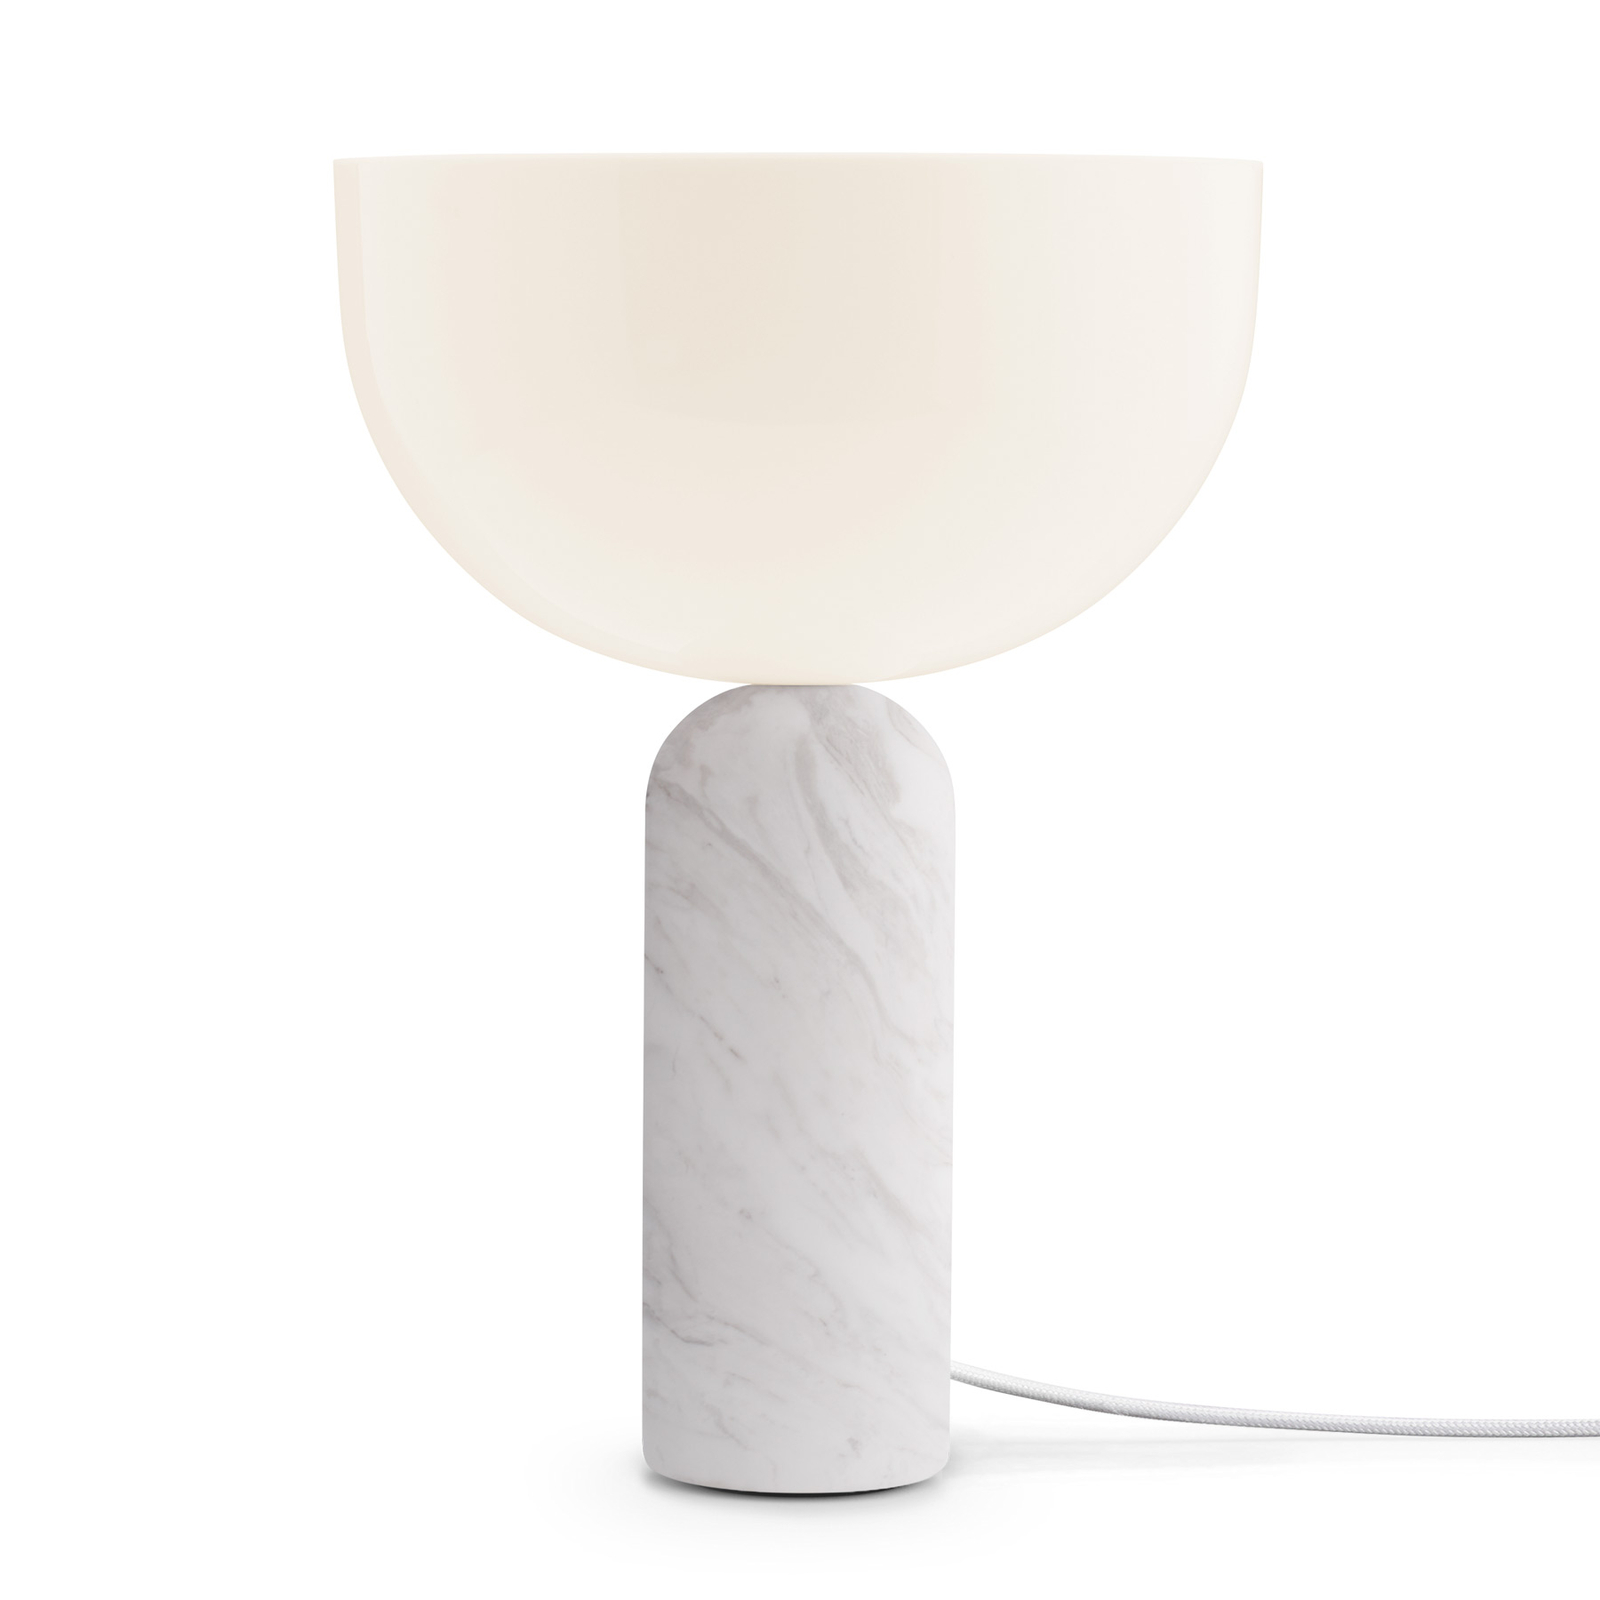 New Works Kizu Small lampa stołowa, biała